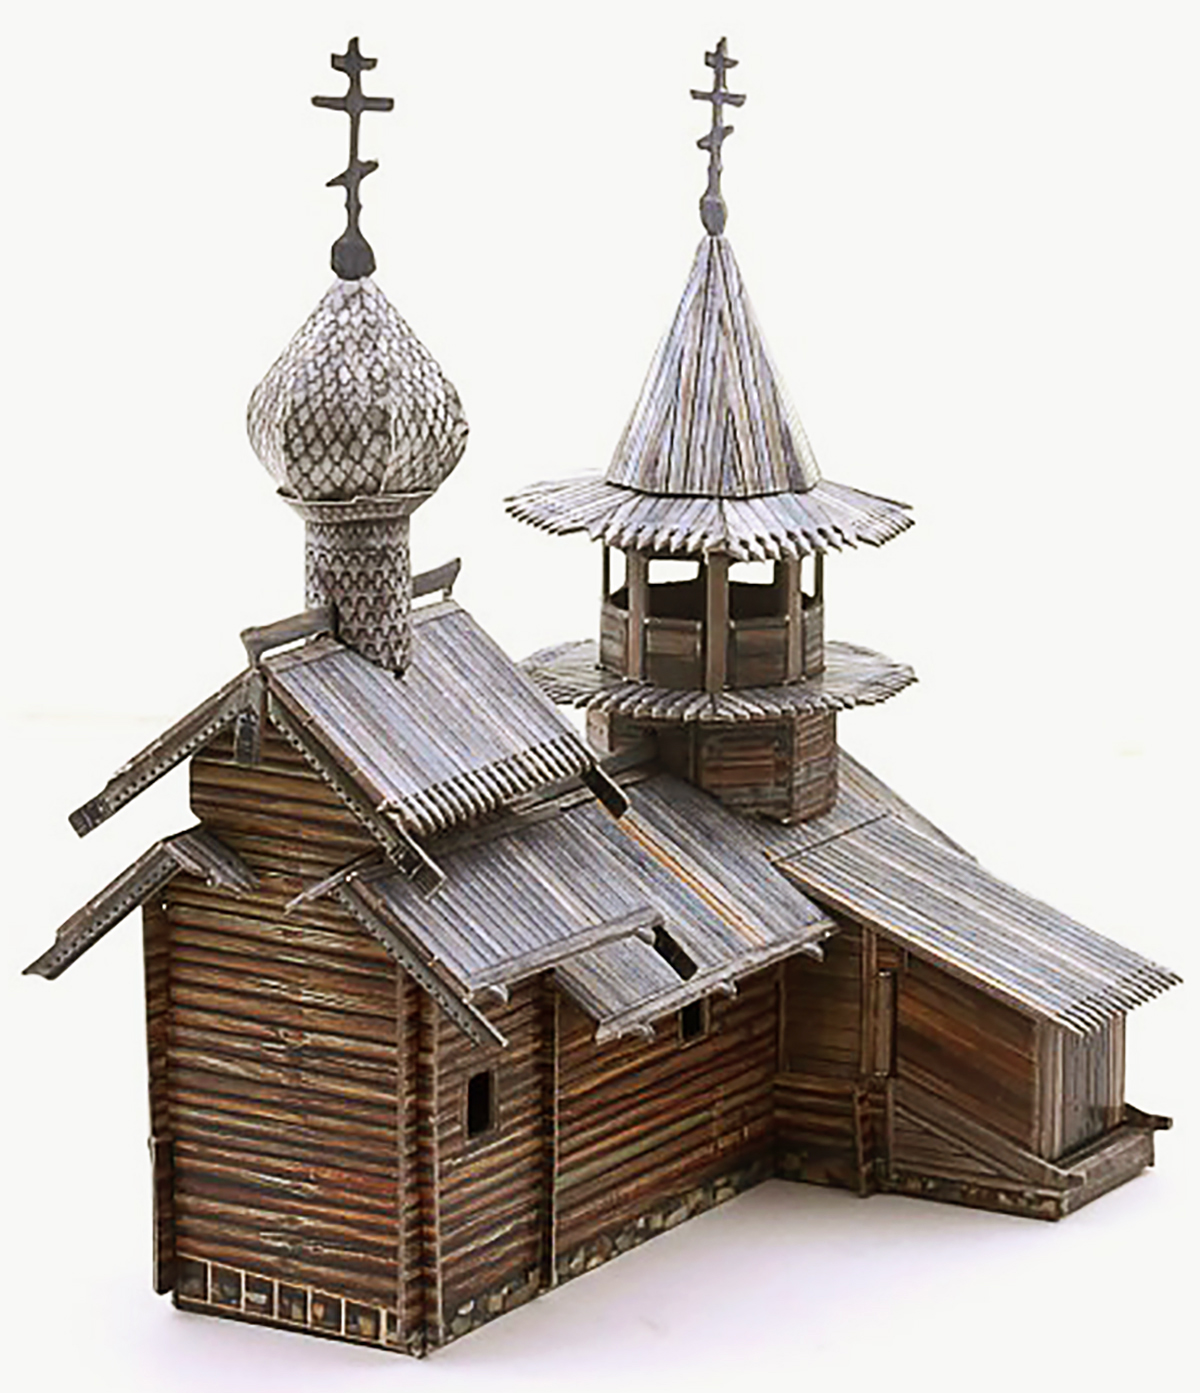 3D Puzzle KARTONMODELLBAU Modell Geschenk Kapelle des Erzengels Michael Kizhi